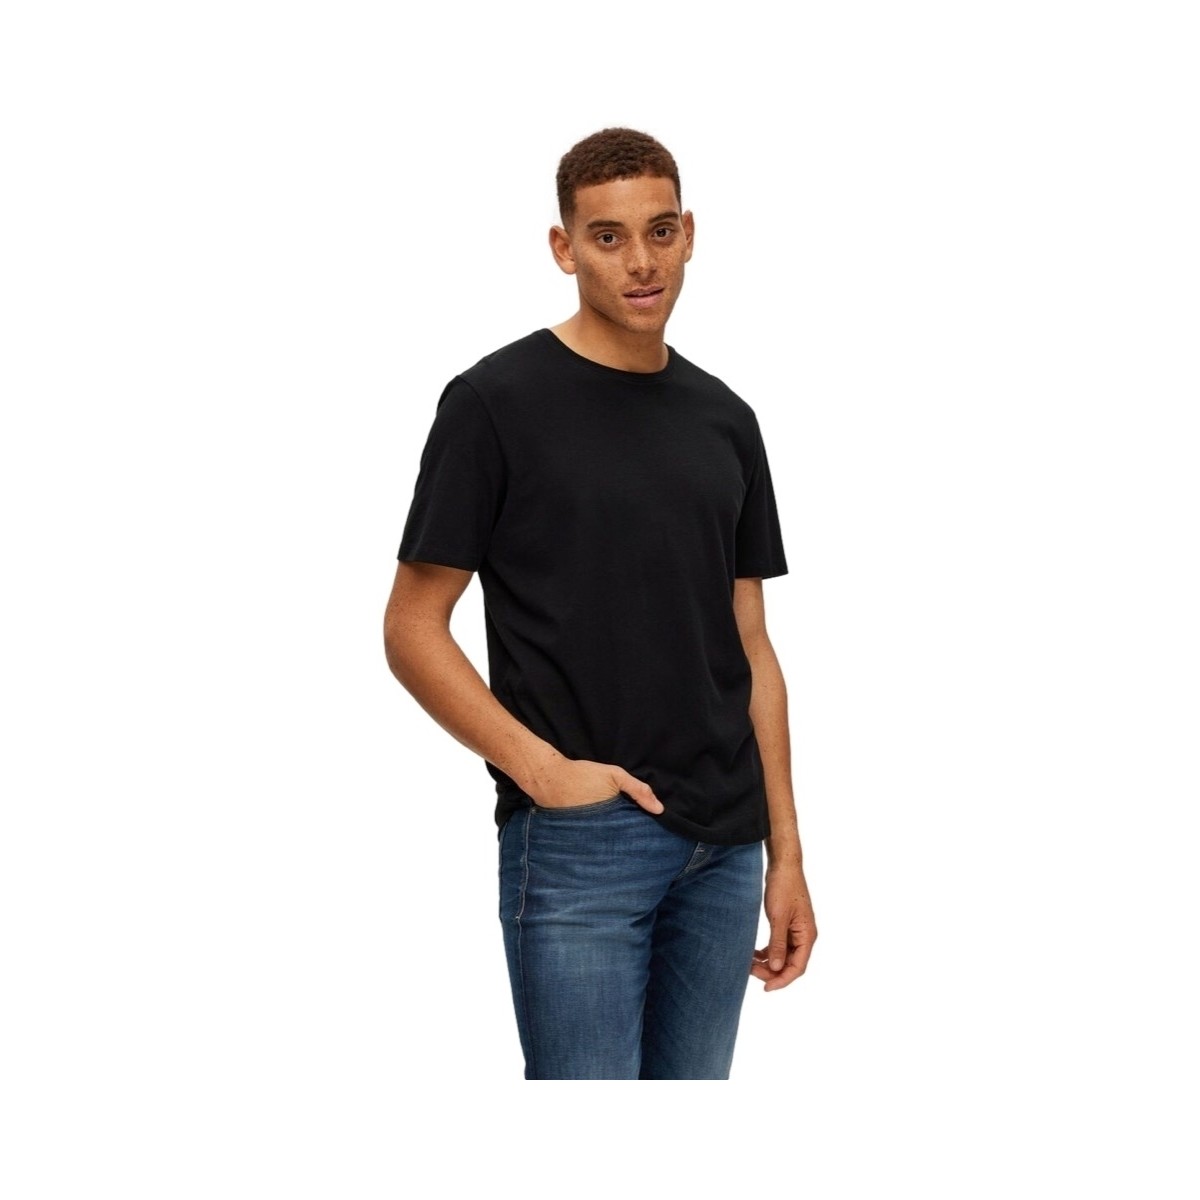 Ruhák Férfi Pólók / Galléros Pólók Selected Noos Pan Linen T-Shirt - Black Fekete 